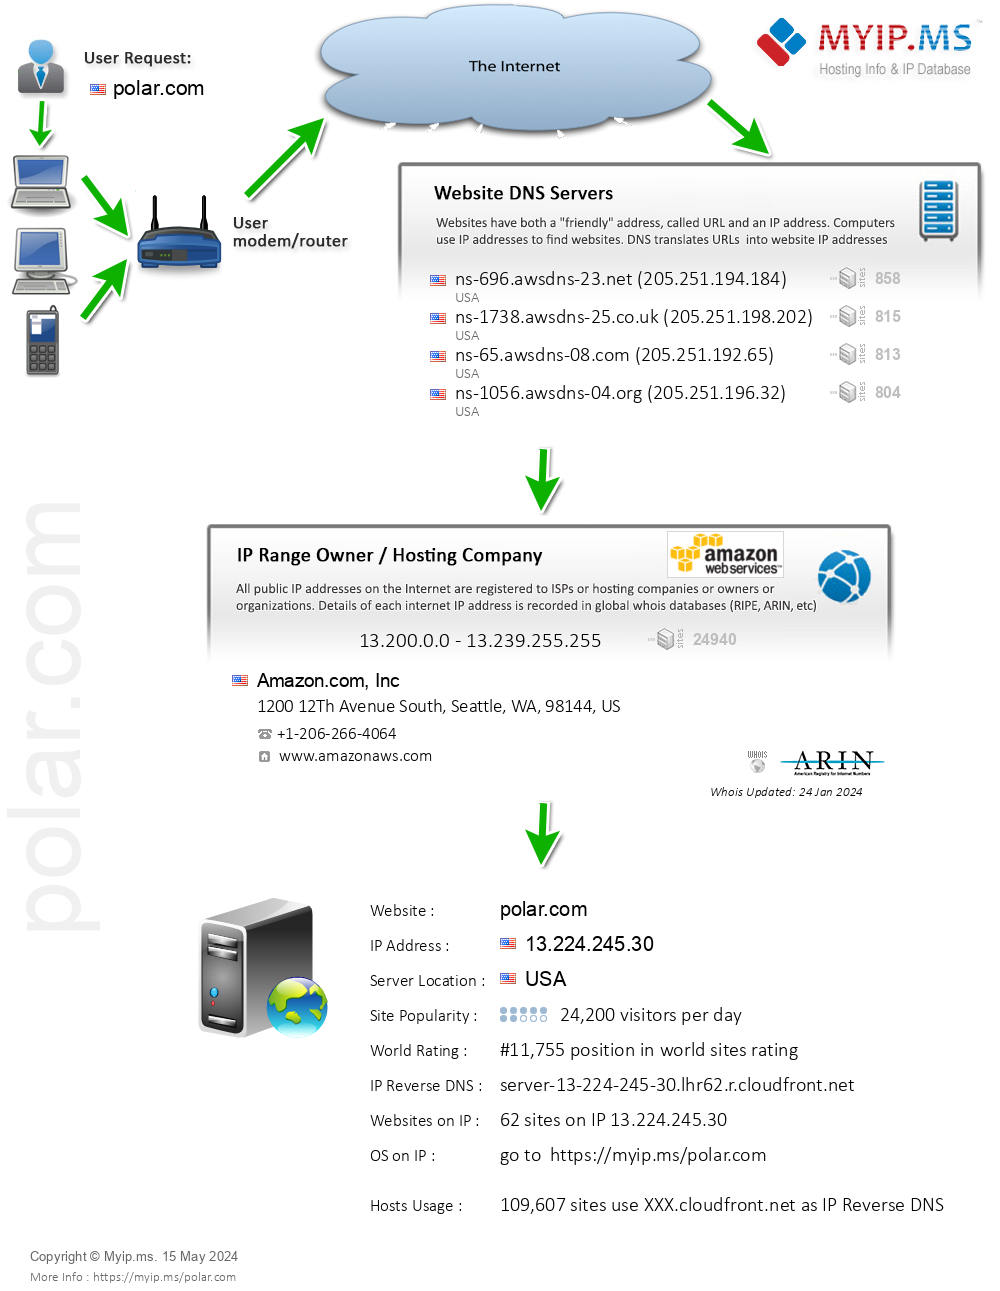 Polar.com - Website Hosting Visual IP Diagram